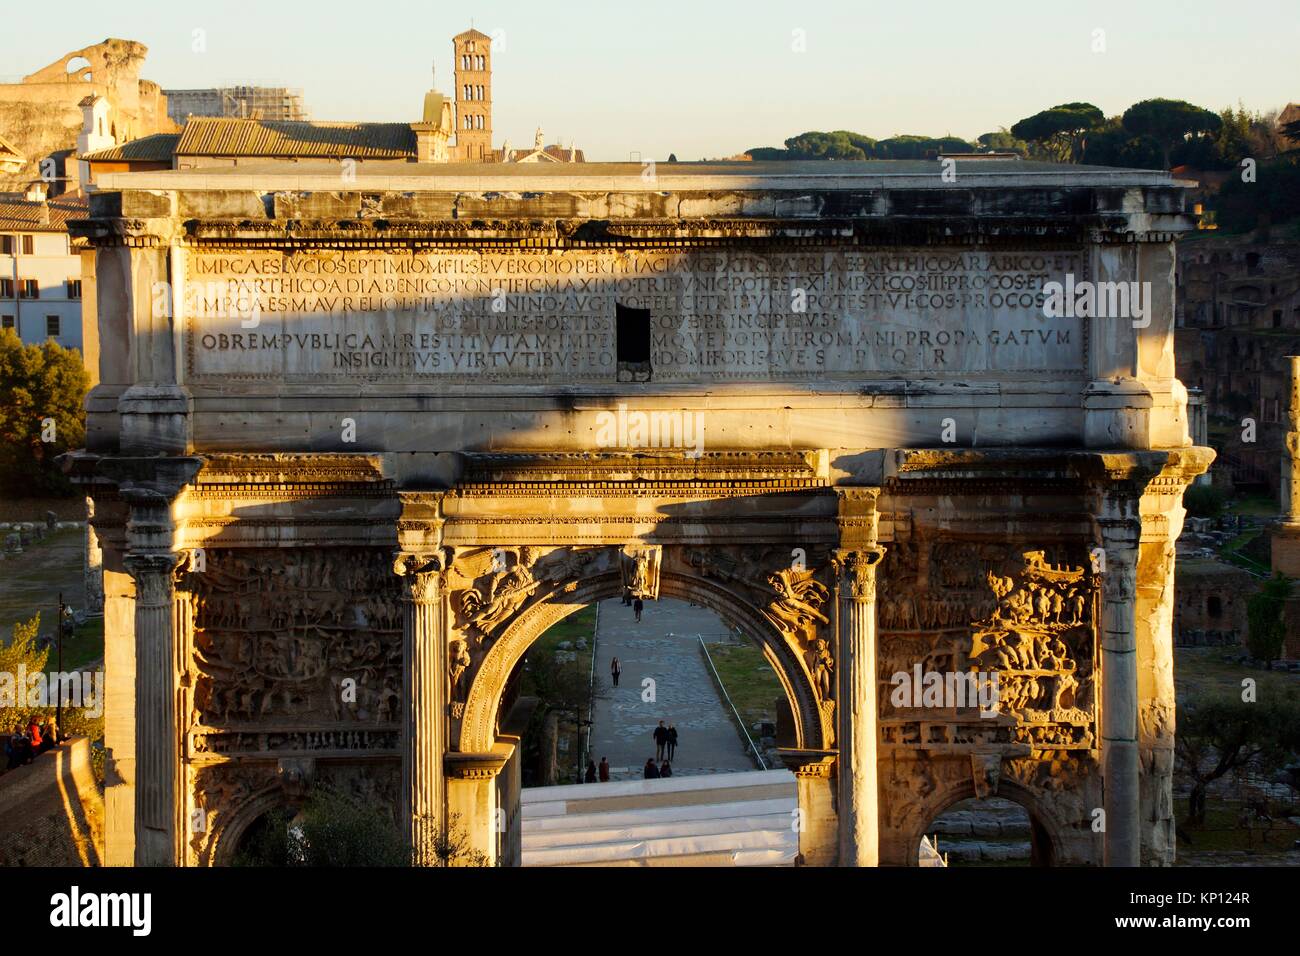 Roma (Italia). Arco de Septimio Severo en los Foros Imperiales de Roma. Foto de stock